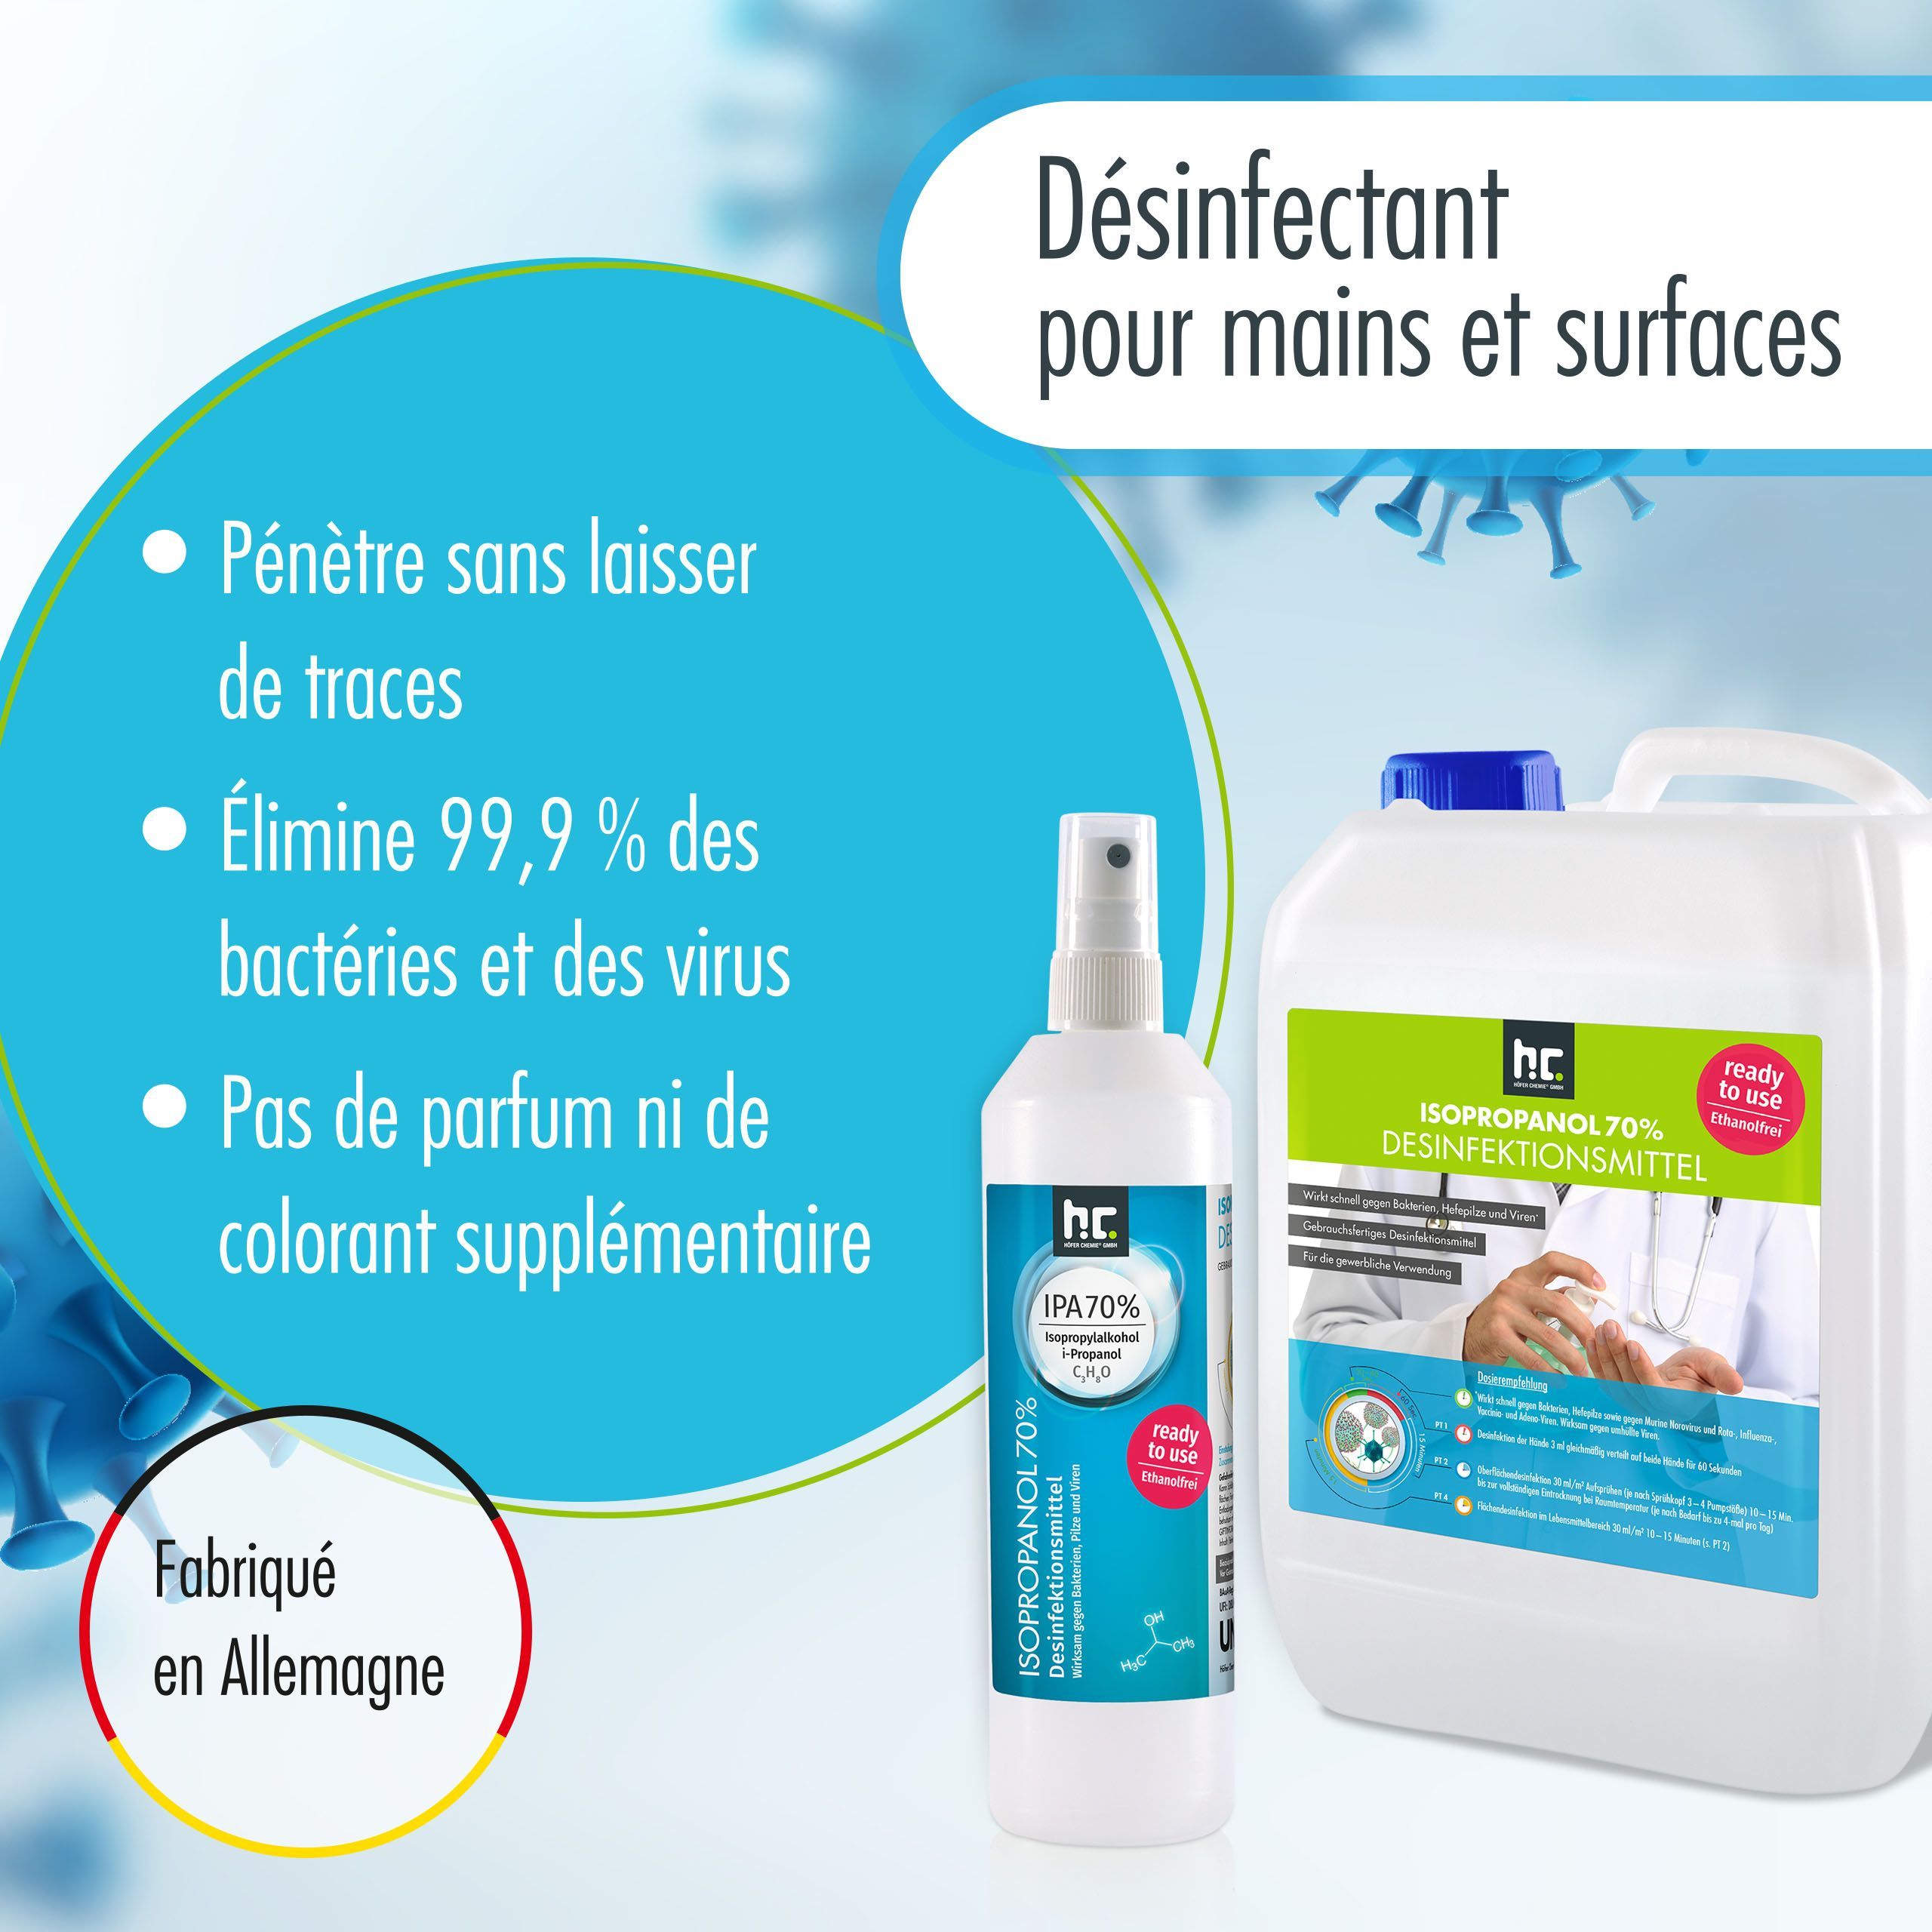 Desinfektionsmittel für Hände & Flächen in 250 ml Flaschen - anwendungsfertig